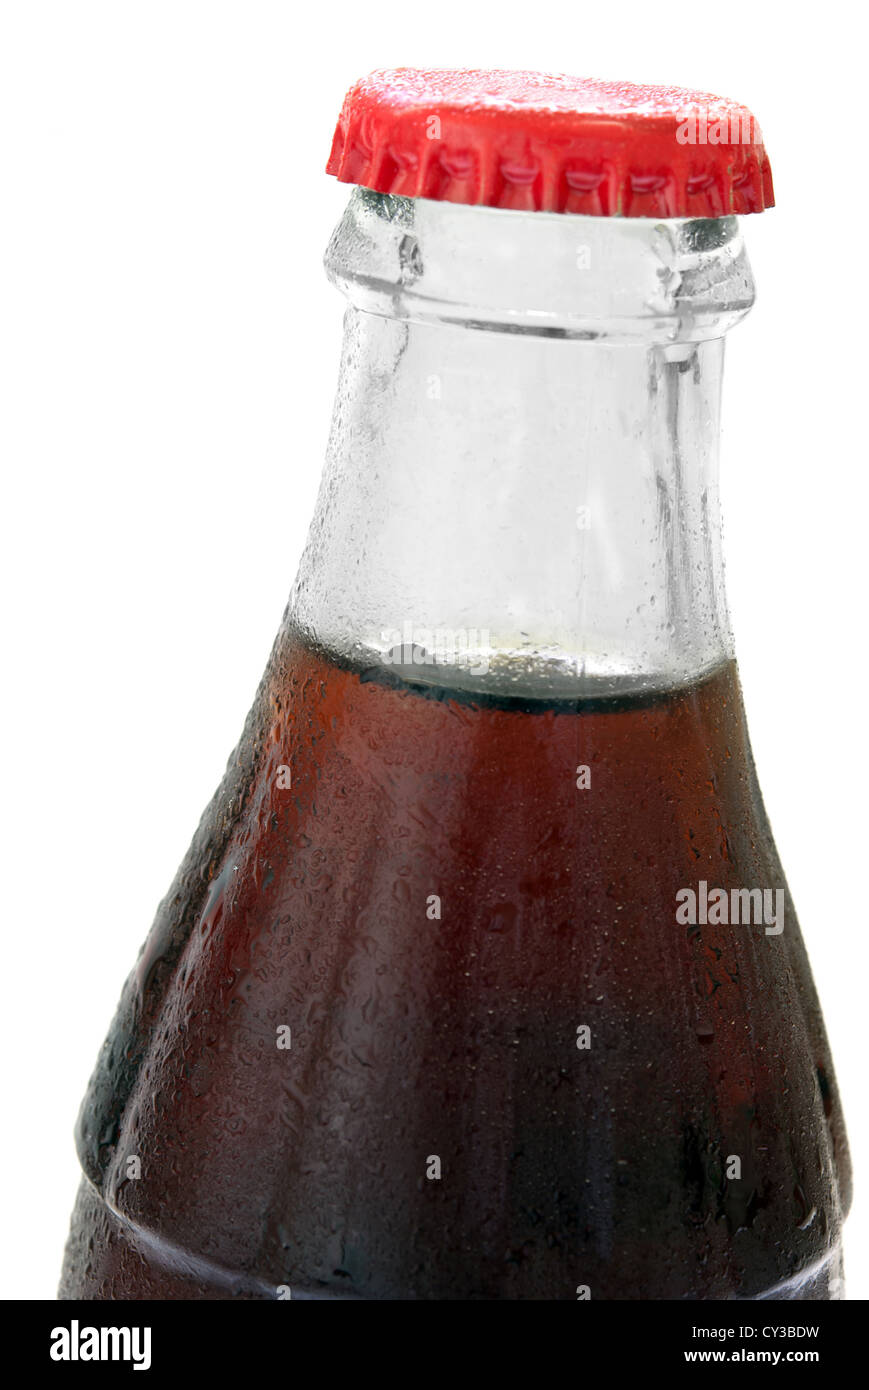 Bottiglia in vetro con cola su uno sfondo bianco, senza etichette. Isolato su sfondo bianco Foto Stock